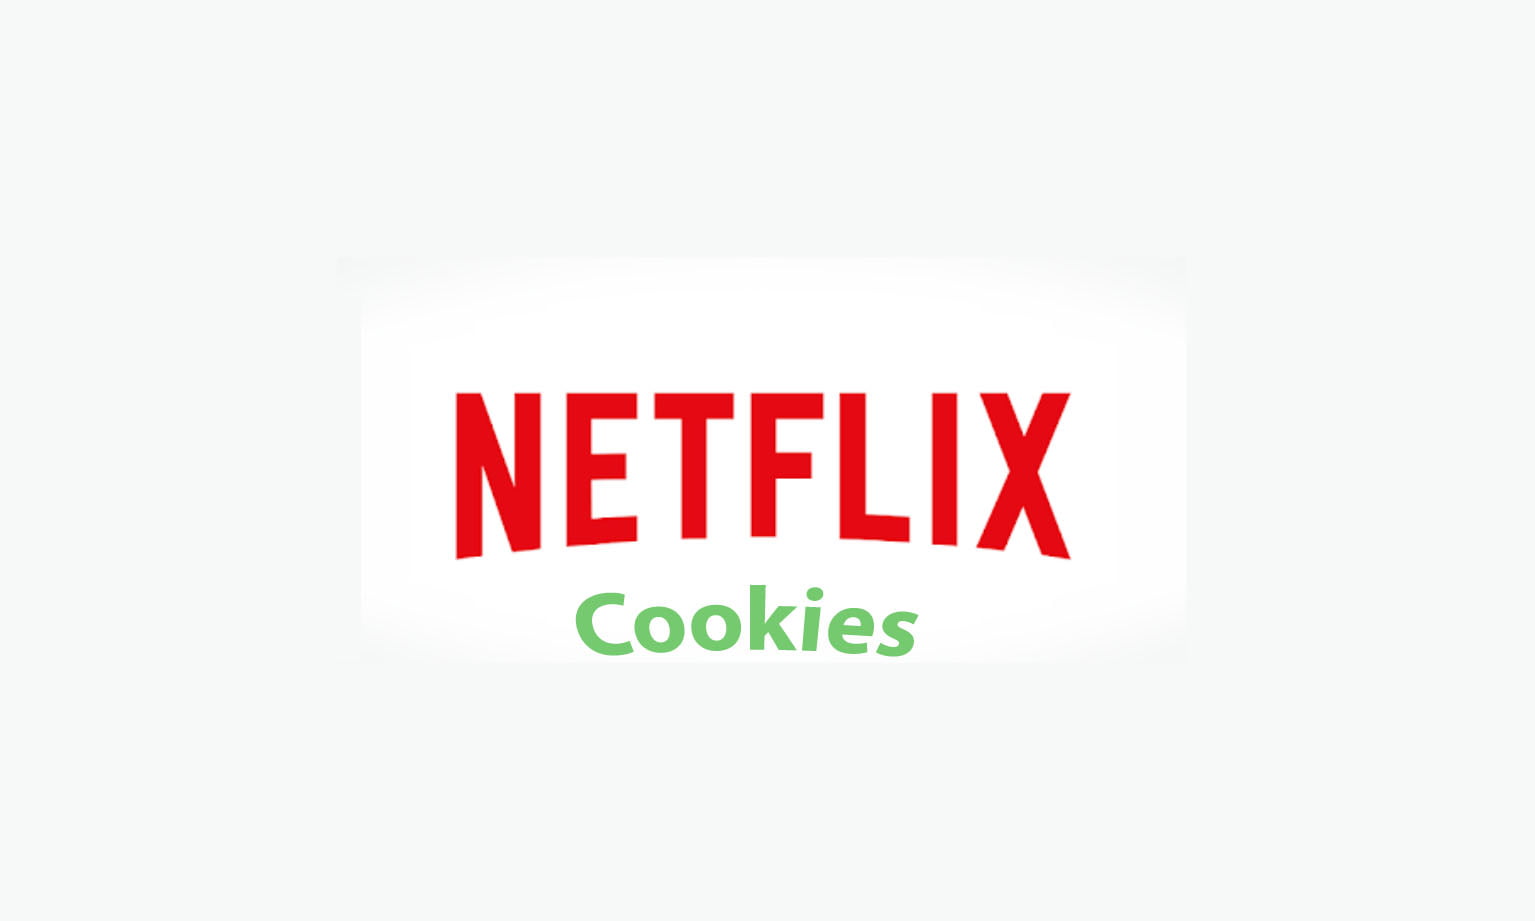 ¿Cómo ver Netflix gratis con las cookies?